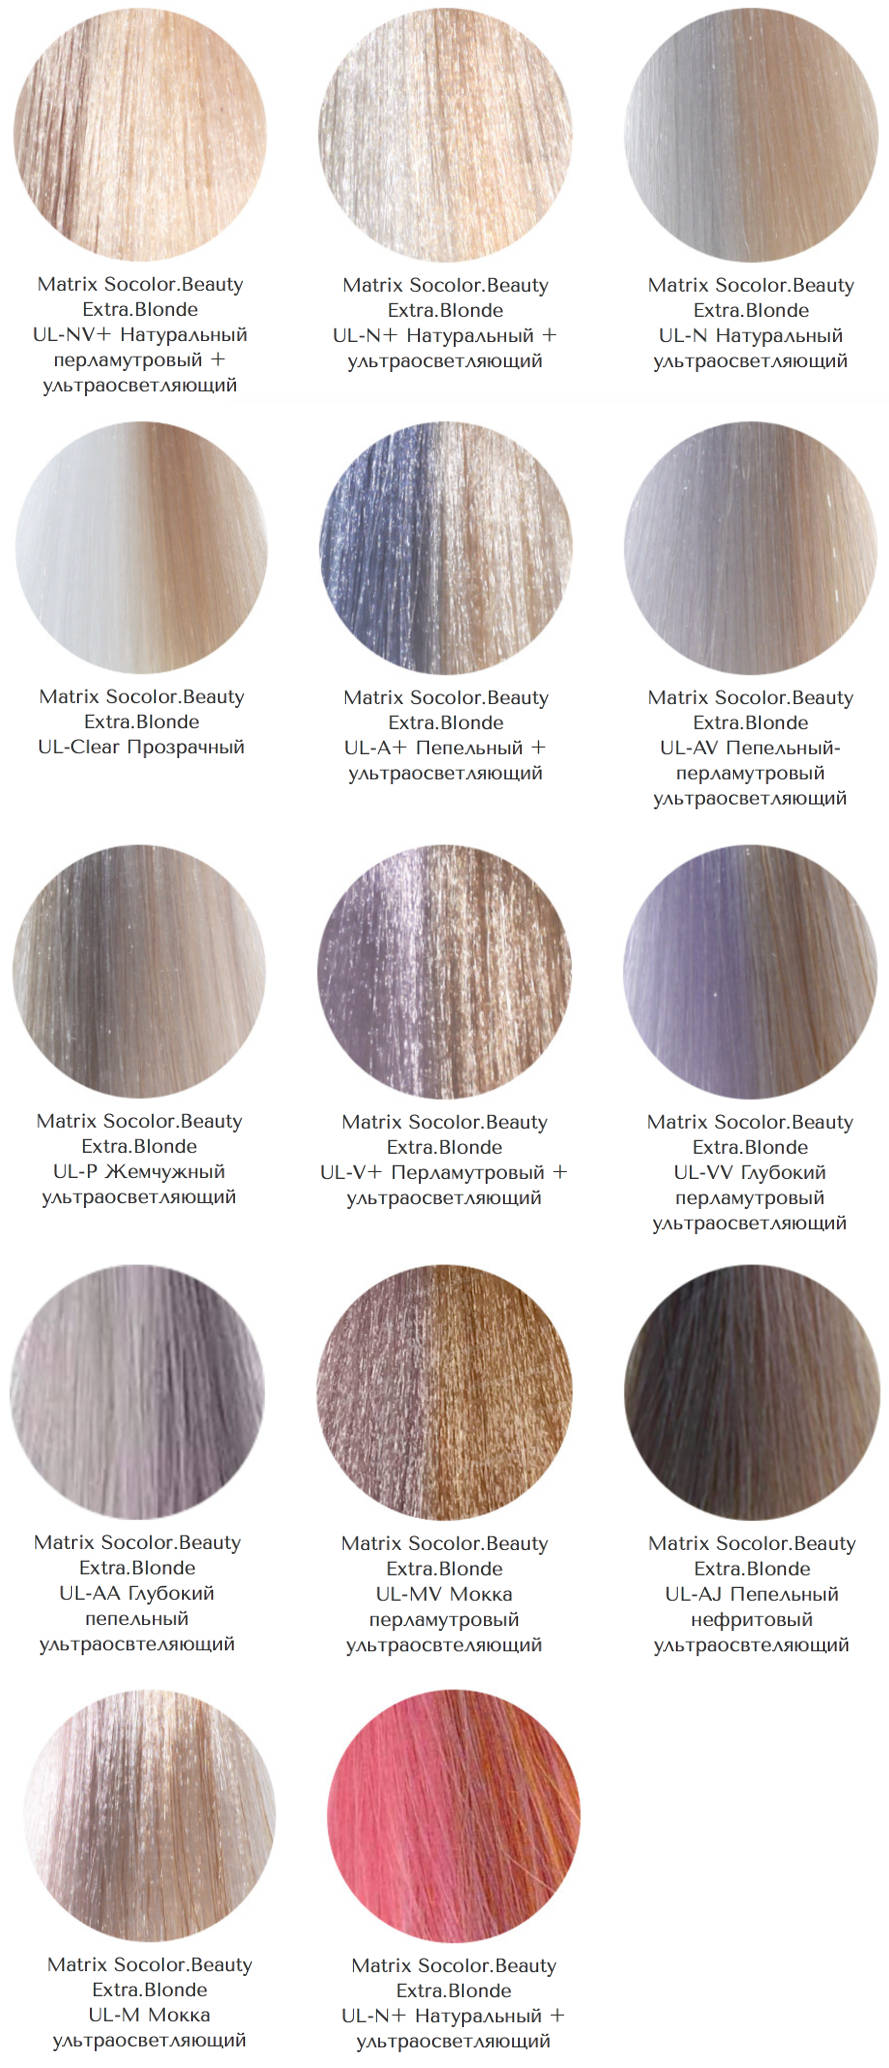 Оттенки красок для волос Matrix